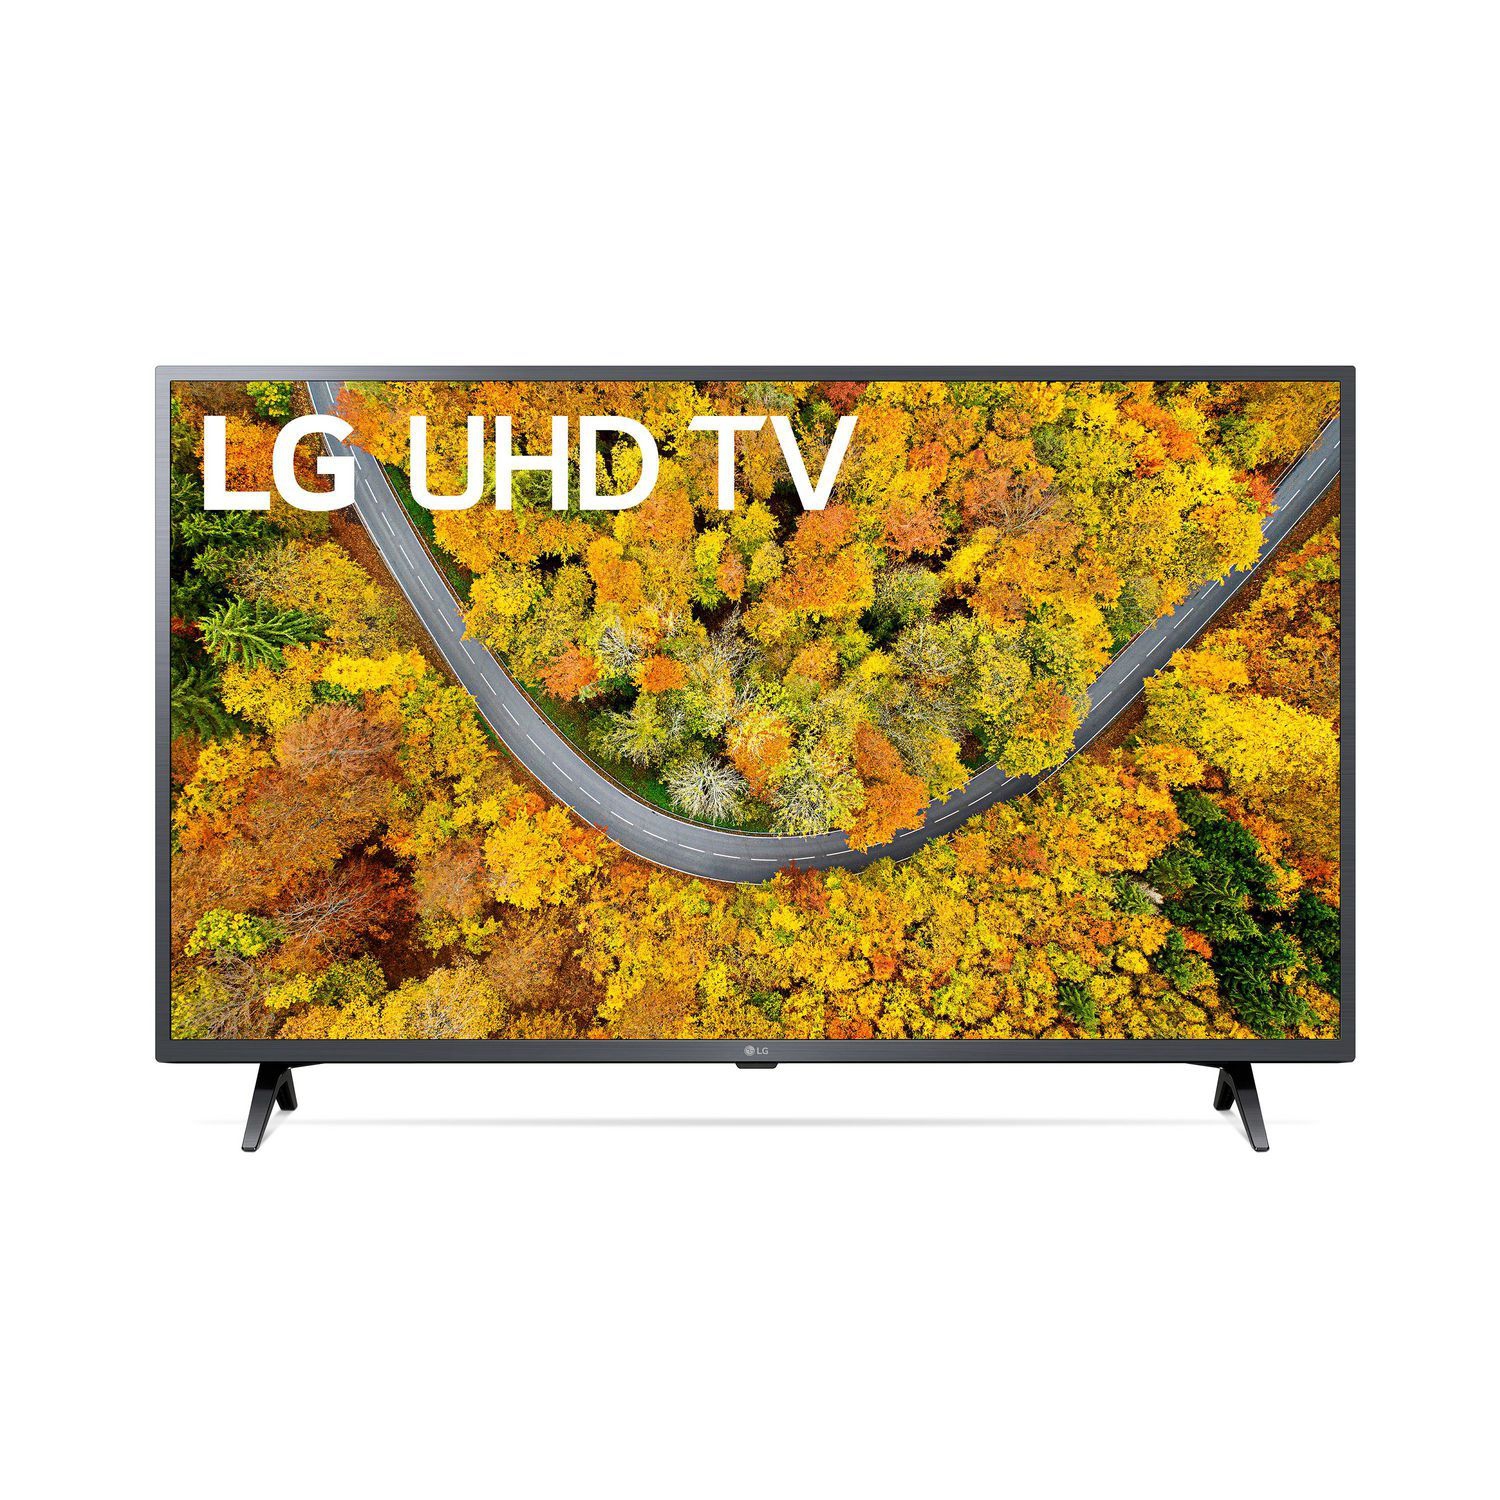 Refurbished (Good) - LG 55" Class 4K Ultra HD Smart TV w/ThinQ AI (55UP7560AUD)